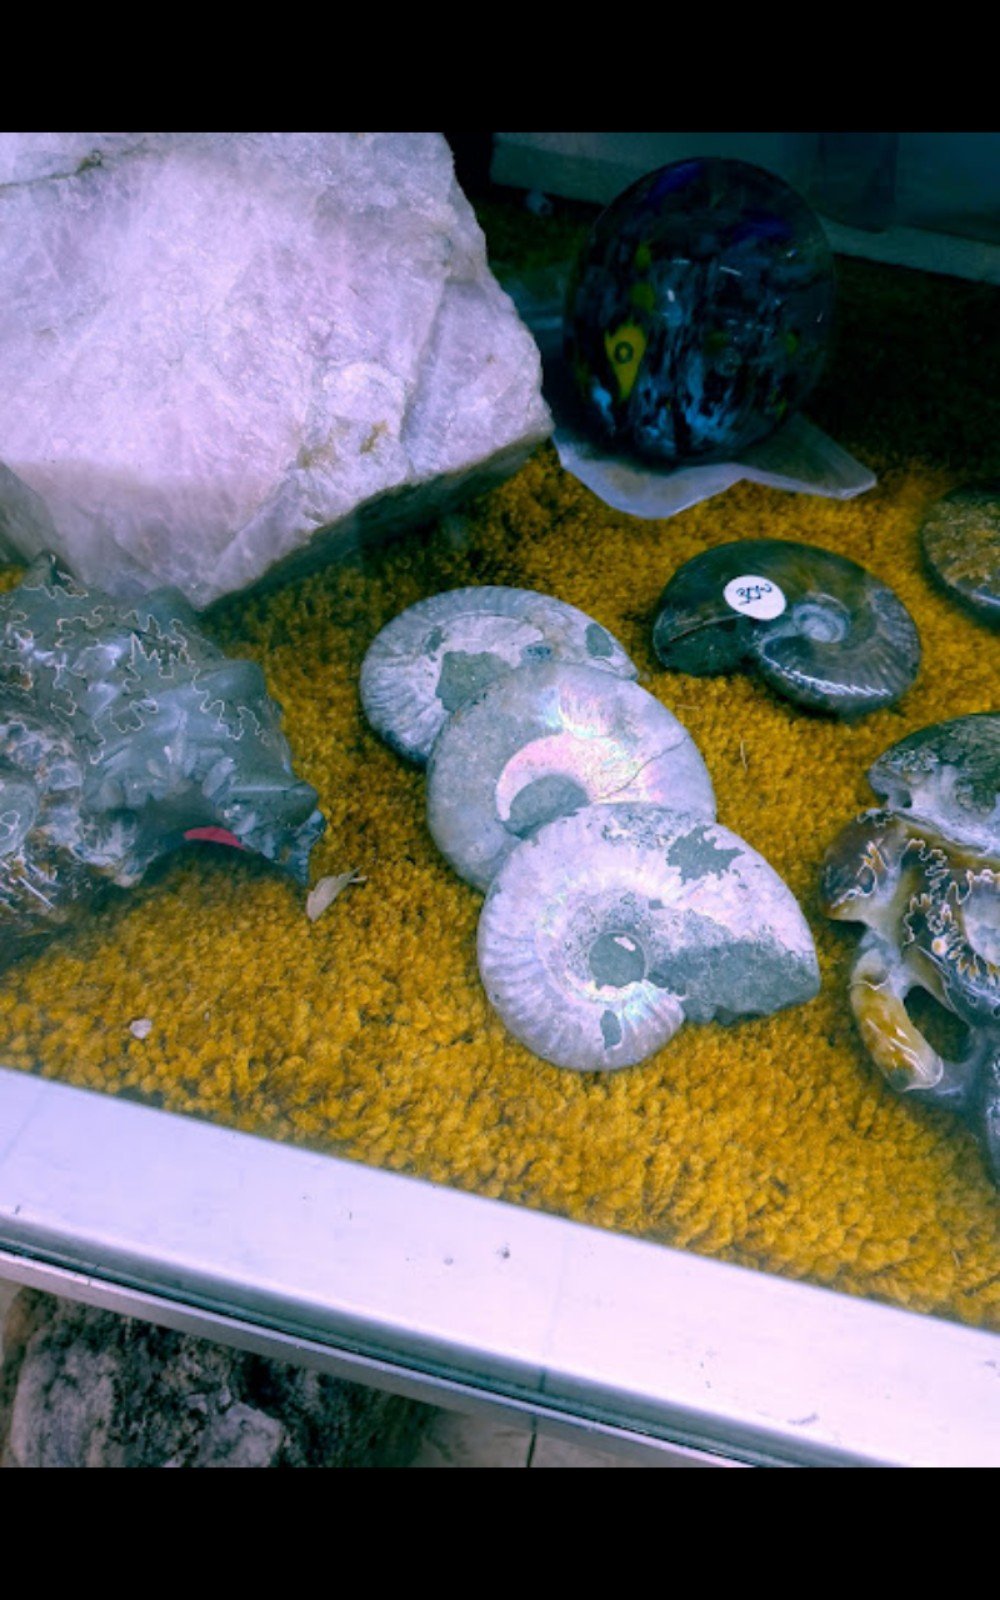 Ammonites eiuJiiuje